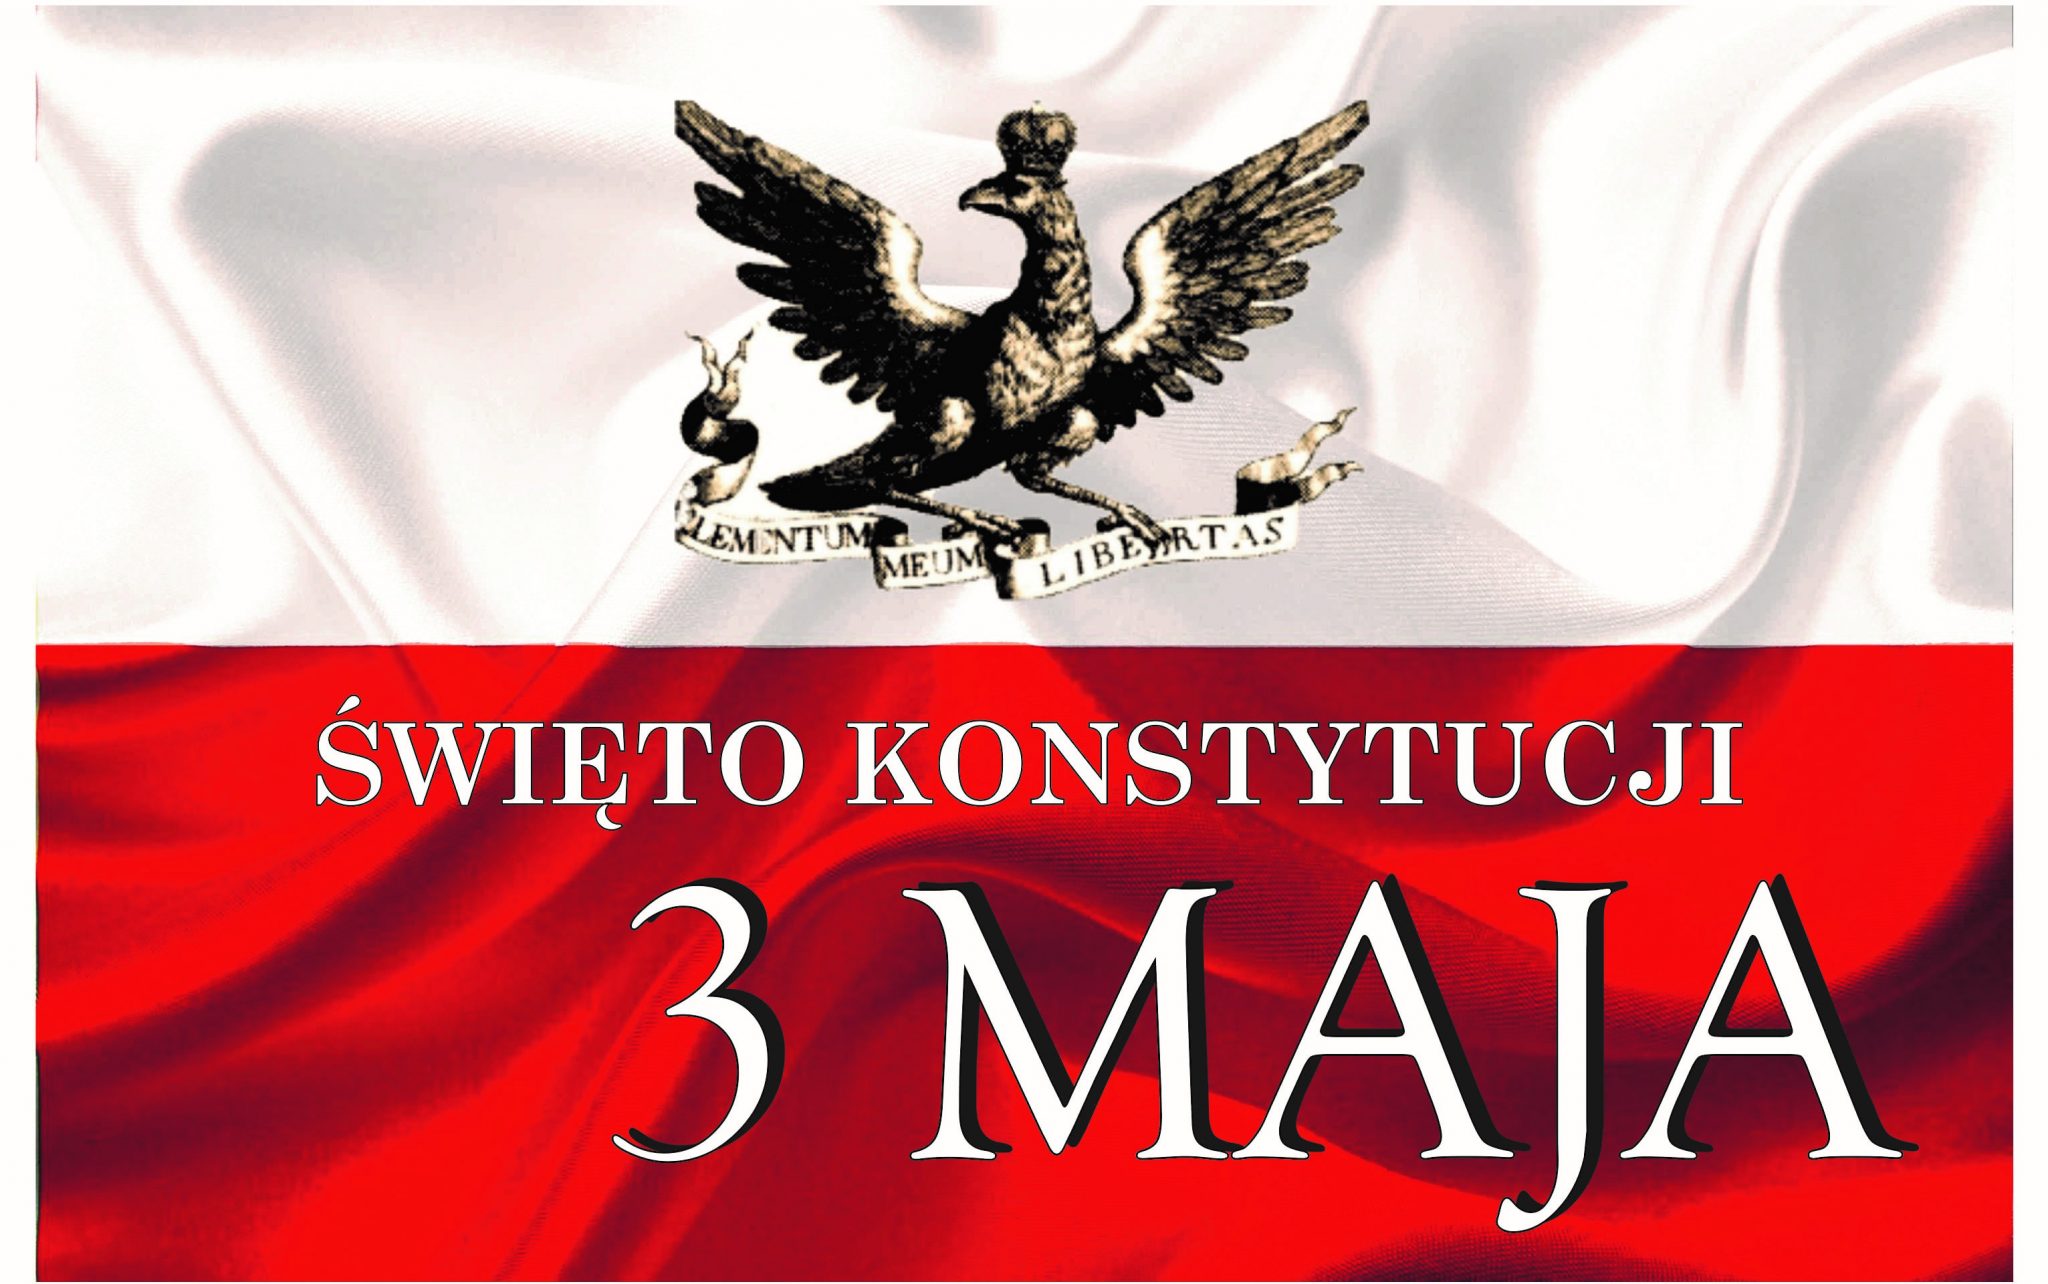 Święto Konstytucji 3 Maja. awatar. Flaga polski i symbol orła.